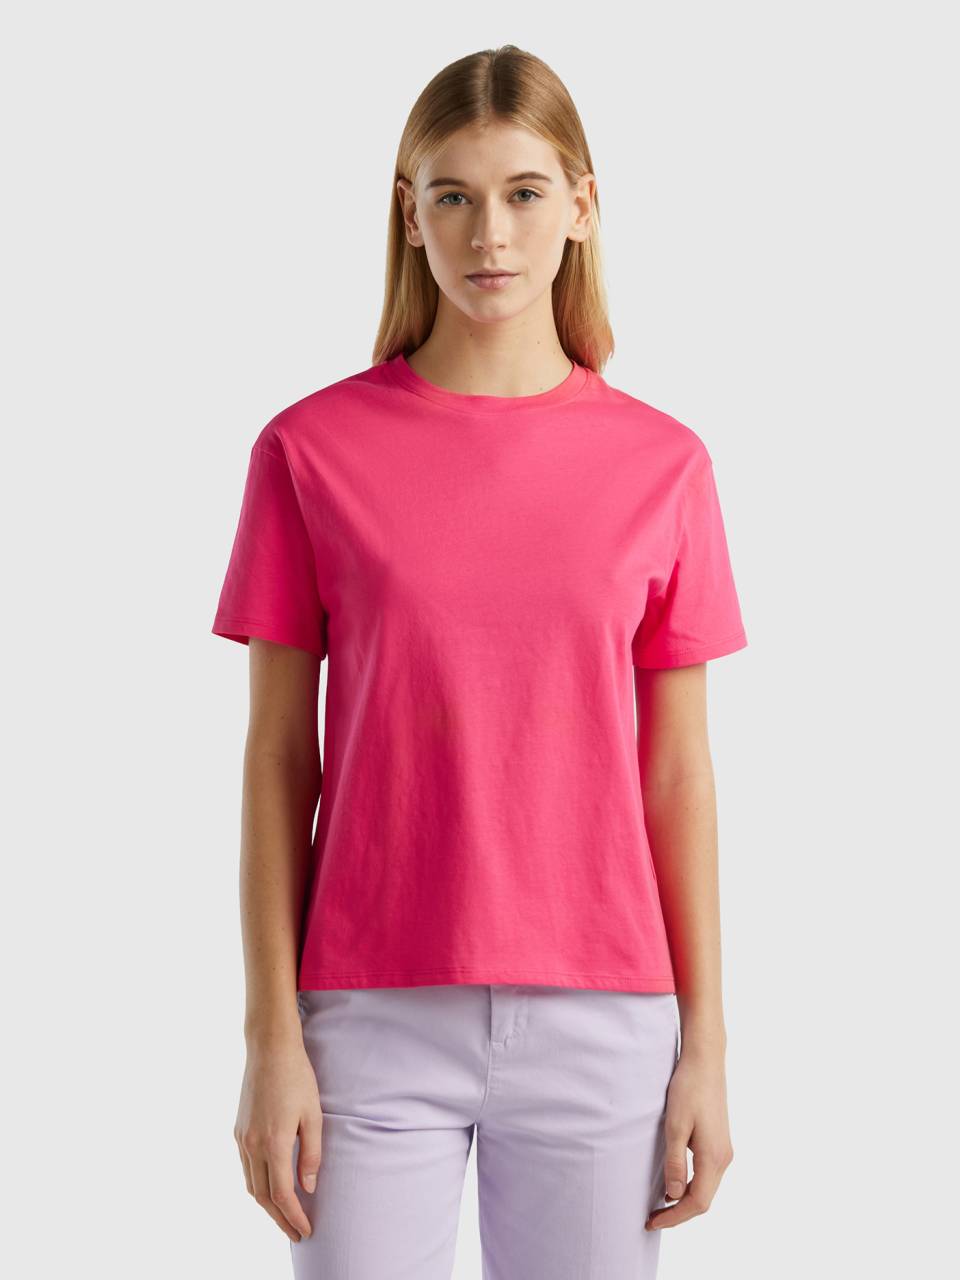 Short sleeve 100% cotton t-shirt - Fuchsia | Benetton